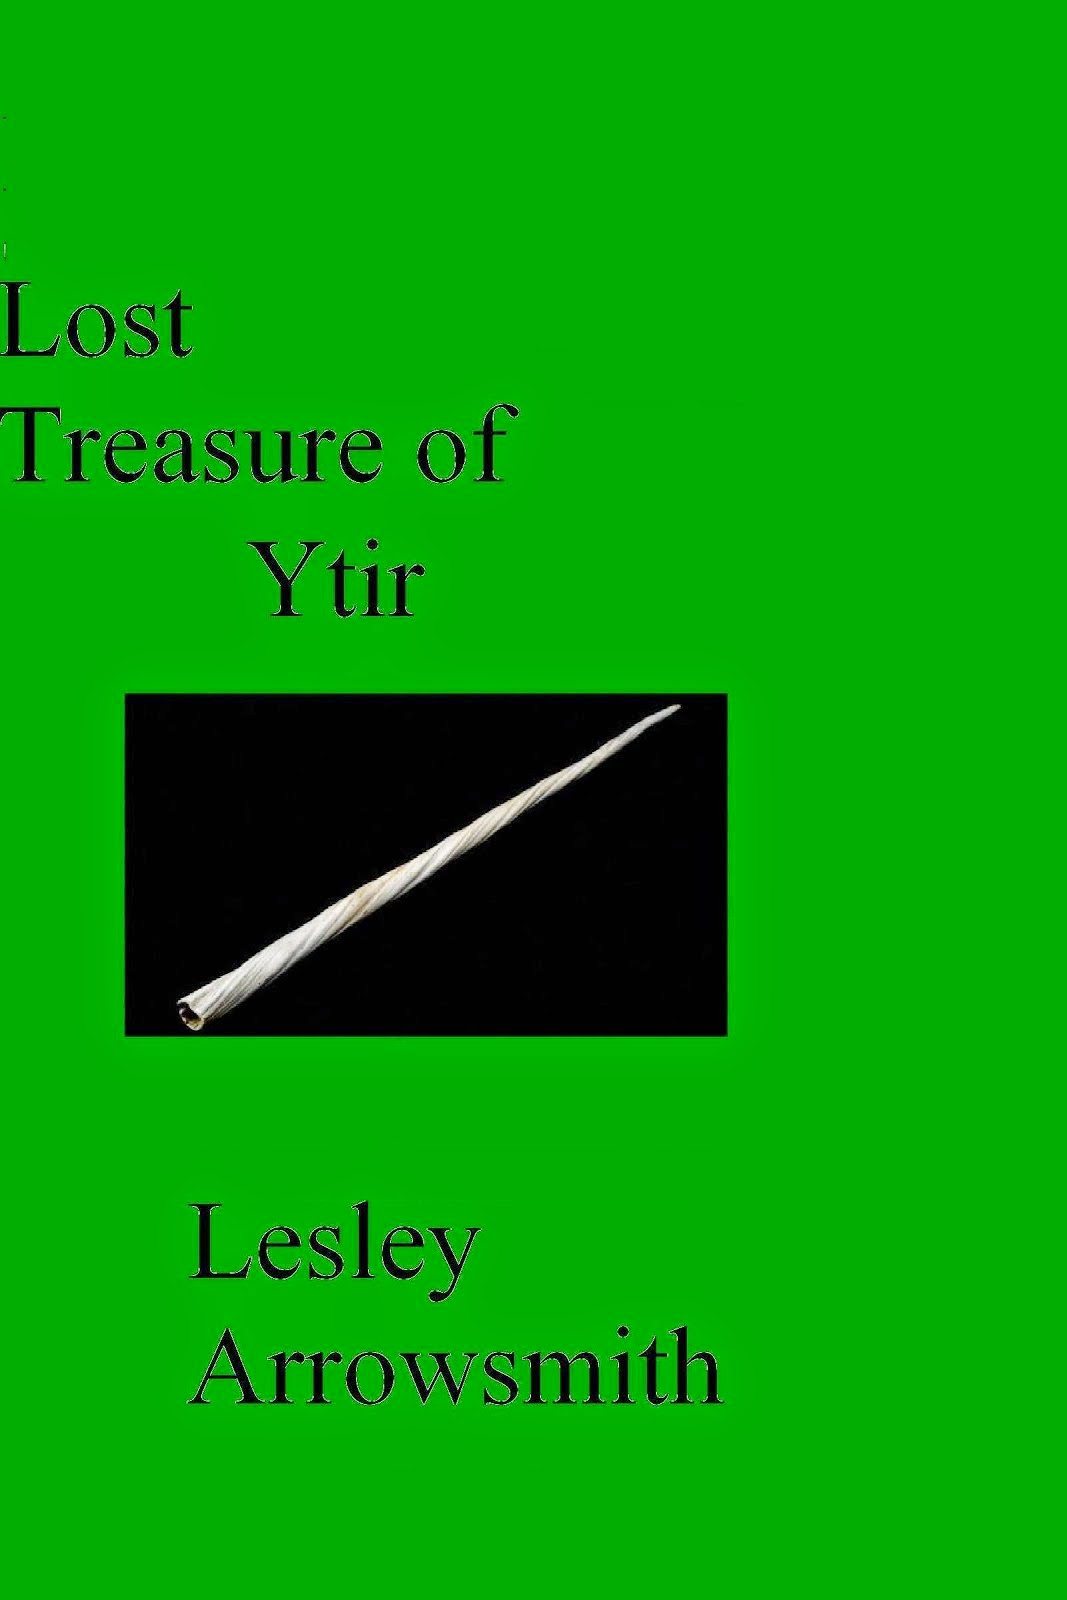 Lost Treasure of Ytir